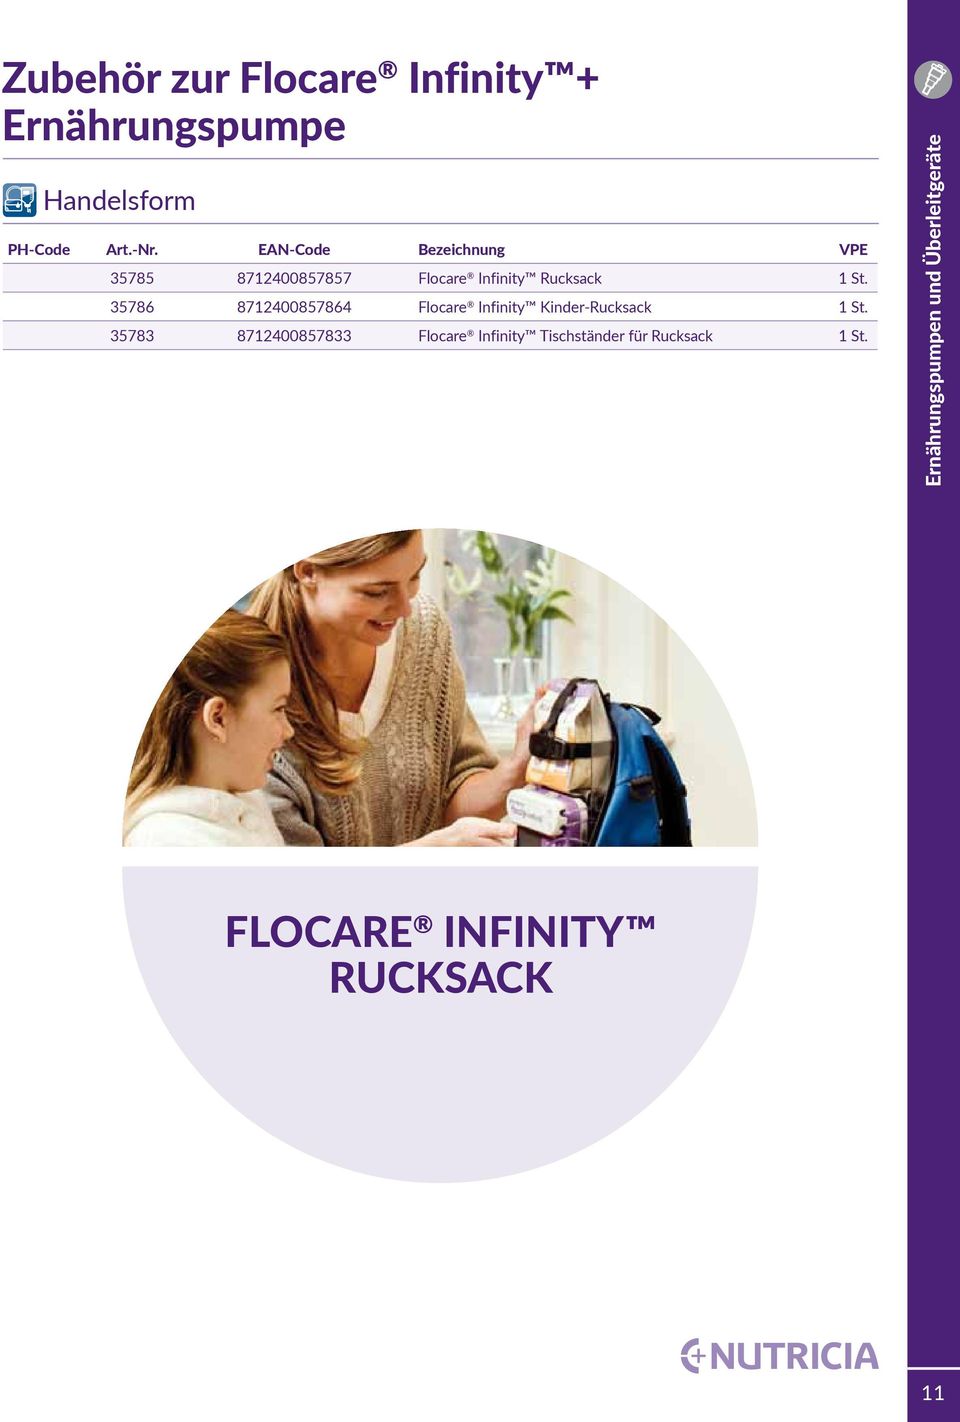 35786 8712400857864 Flocare Infinity Kinder-Rucksack 1 St.